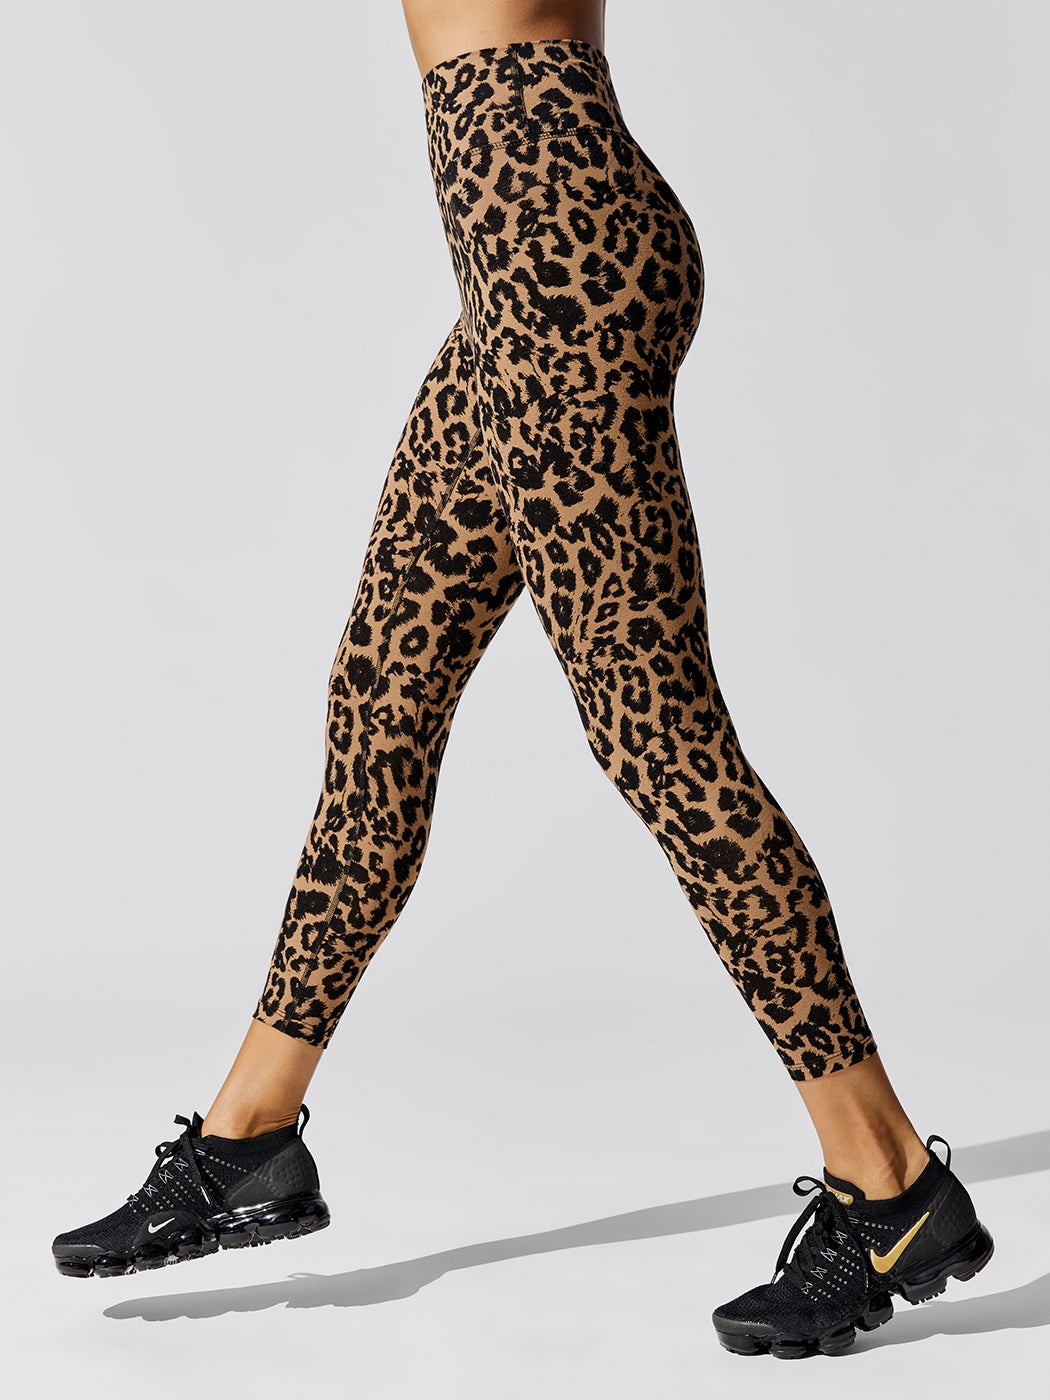 Leopard sports leggings